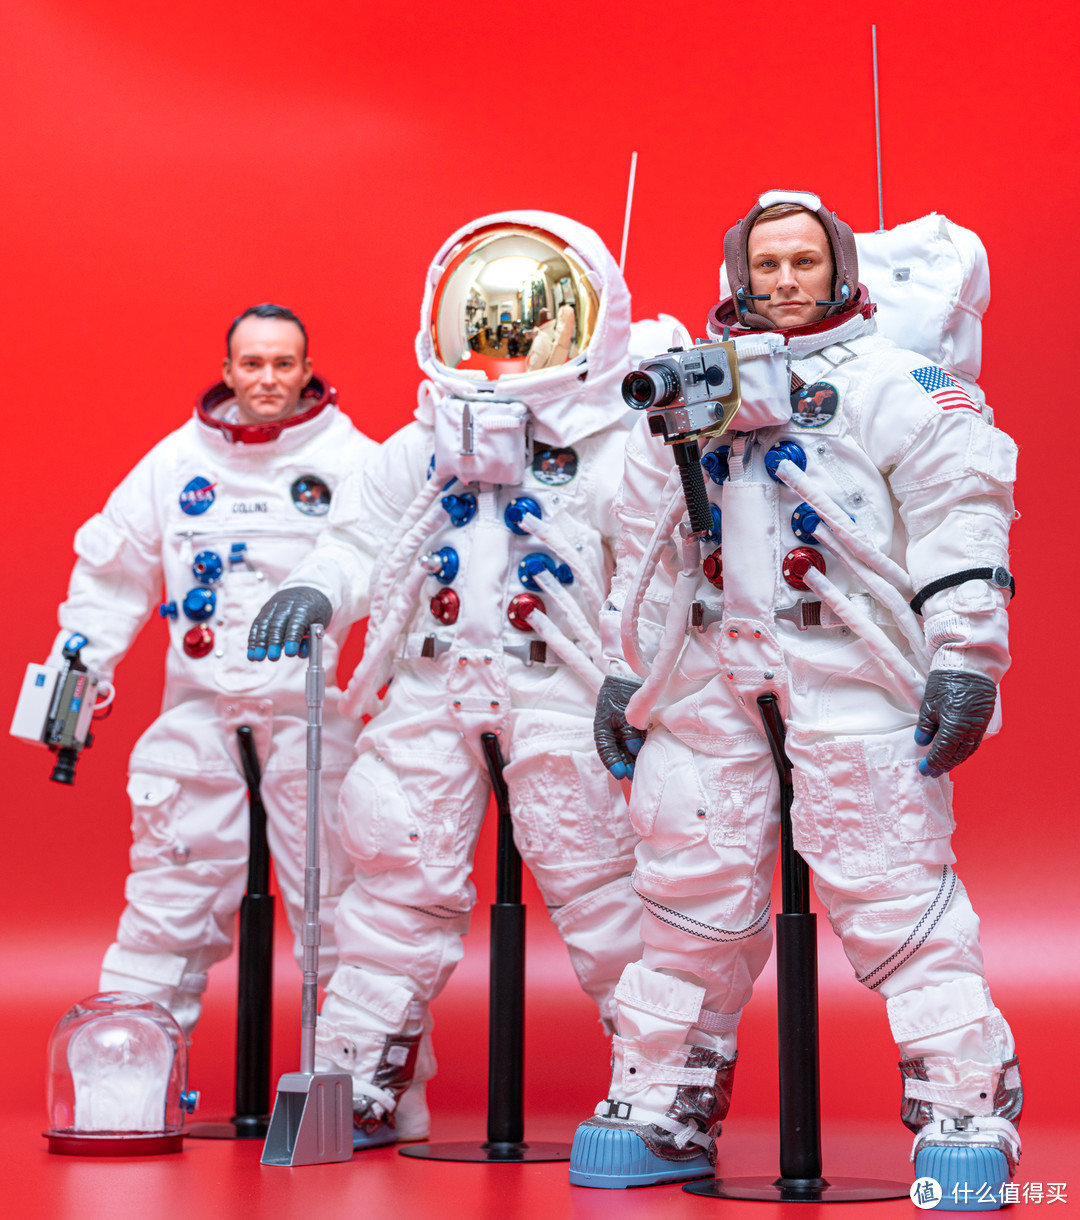 DID 1/6比例，阿波罗11号登月任务宇航成员组可动人偶